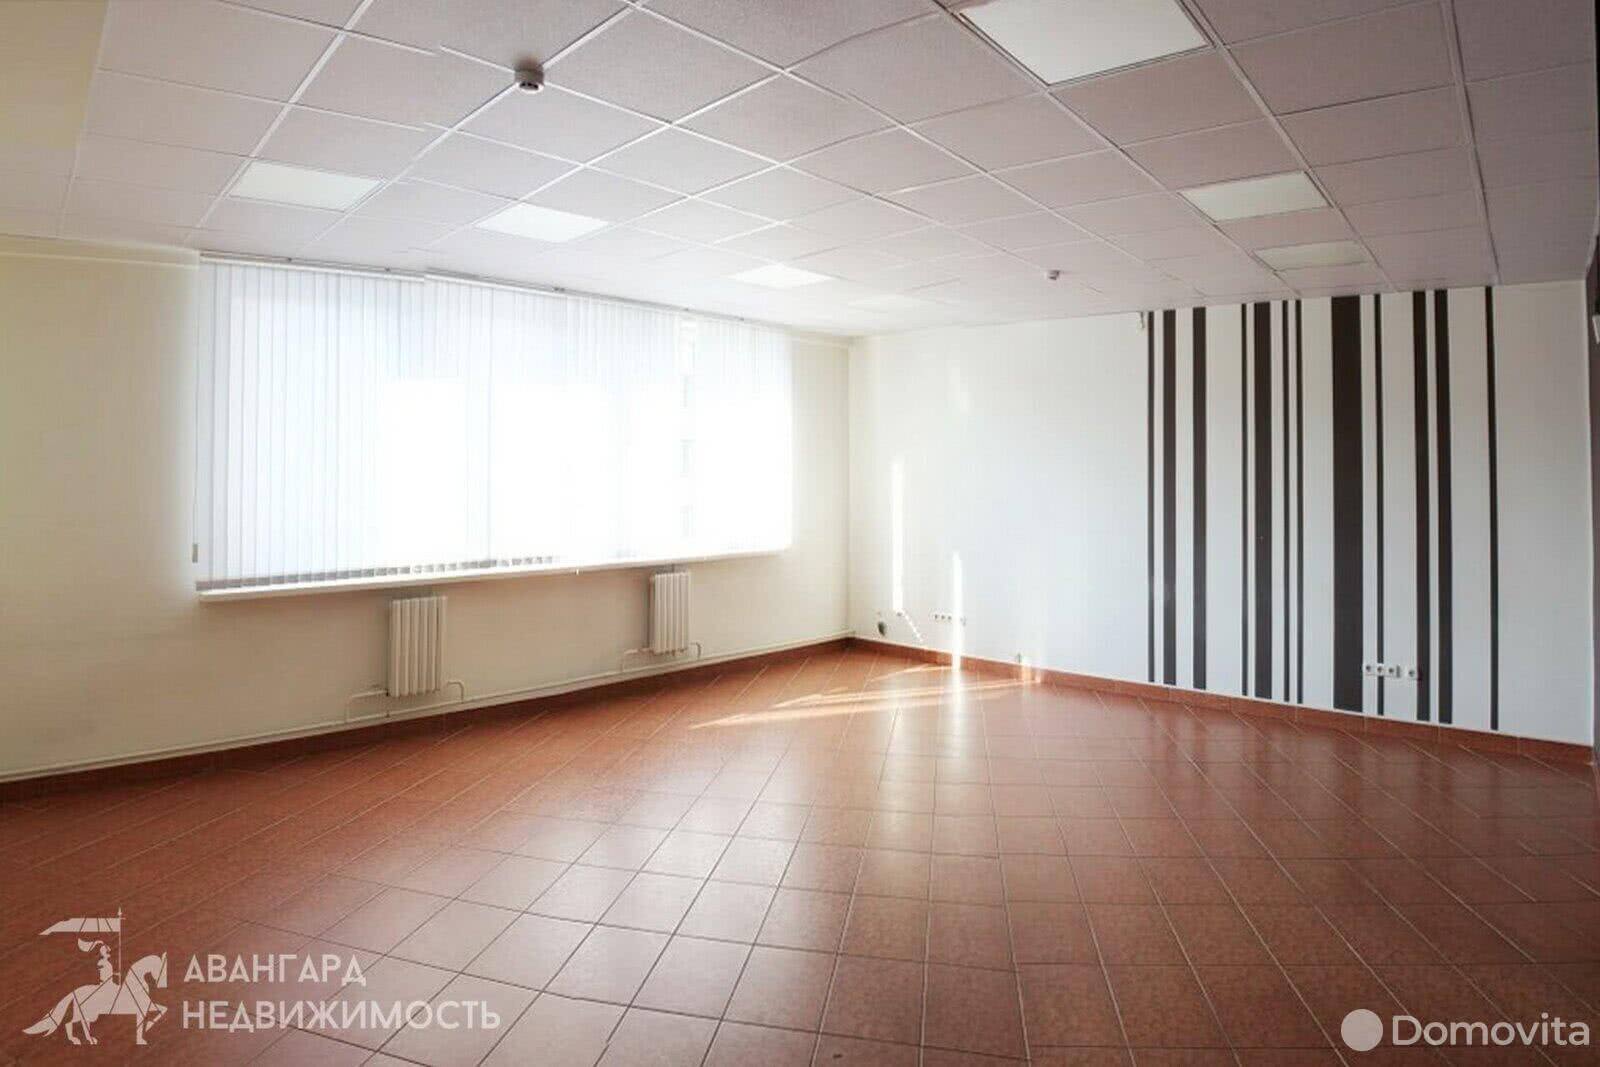 Аренда офиса на ул. Кропоткина, д. 108/А в Минске, 742EUR, код 10754 - фото 1